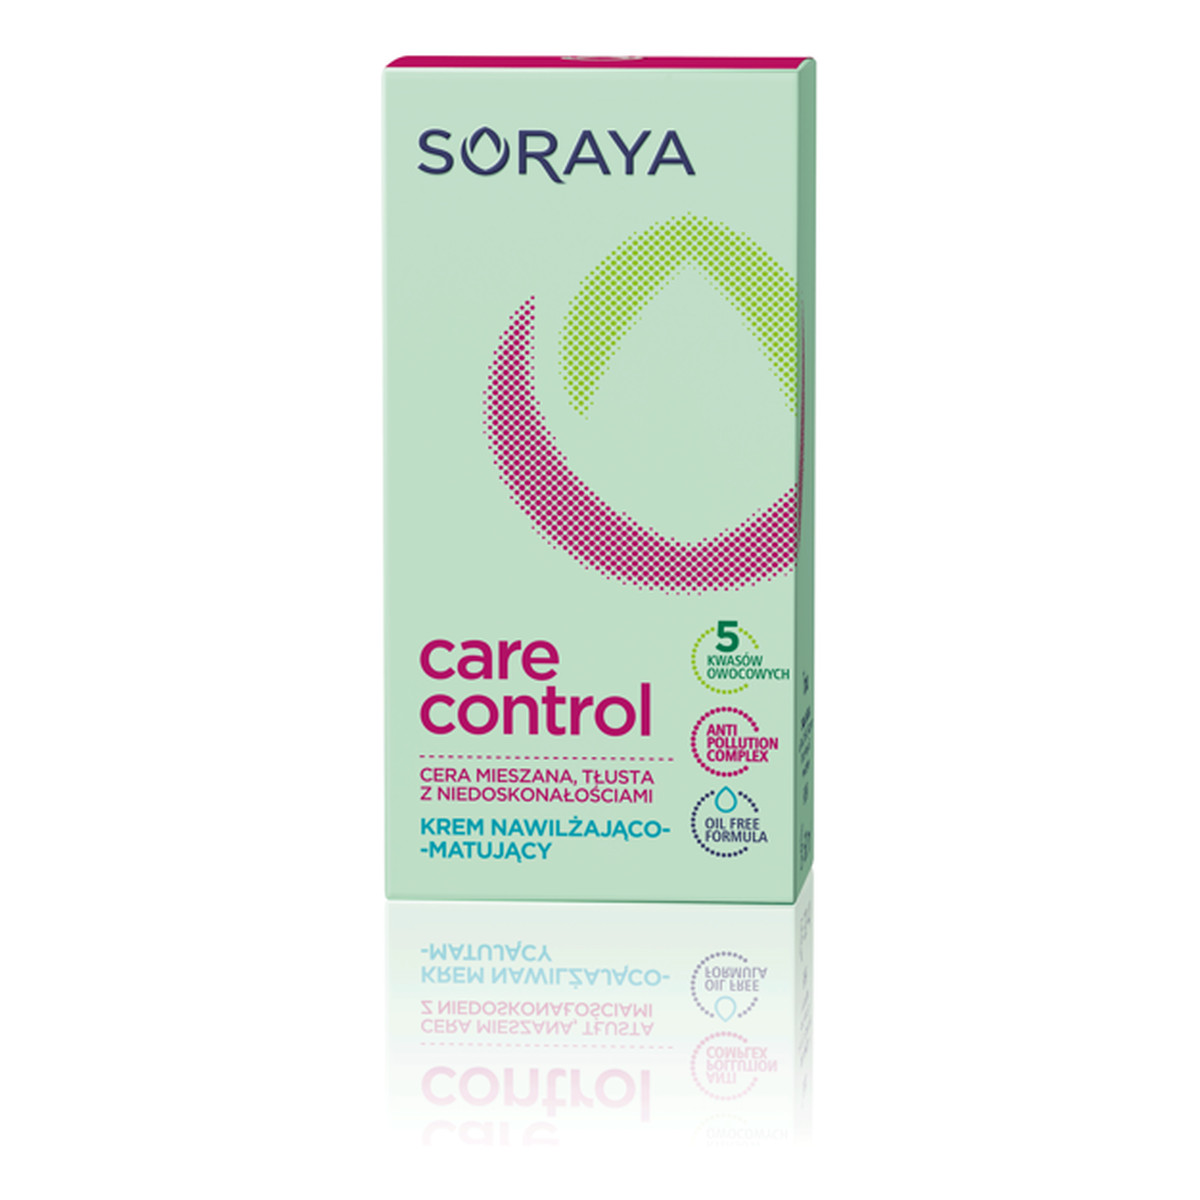 Soraya Care Control Krem nawilżająco-matujący 50ml